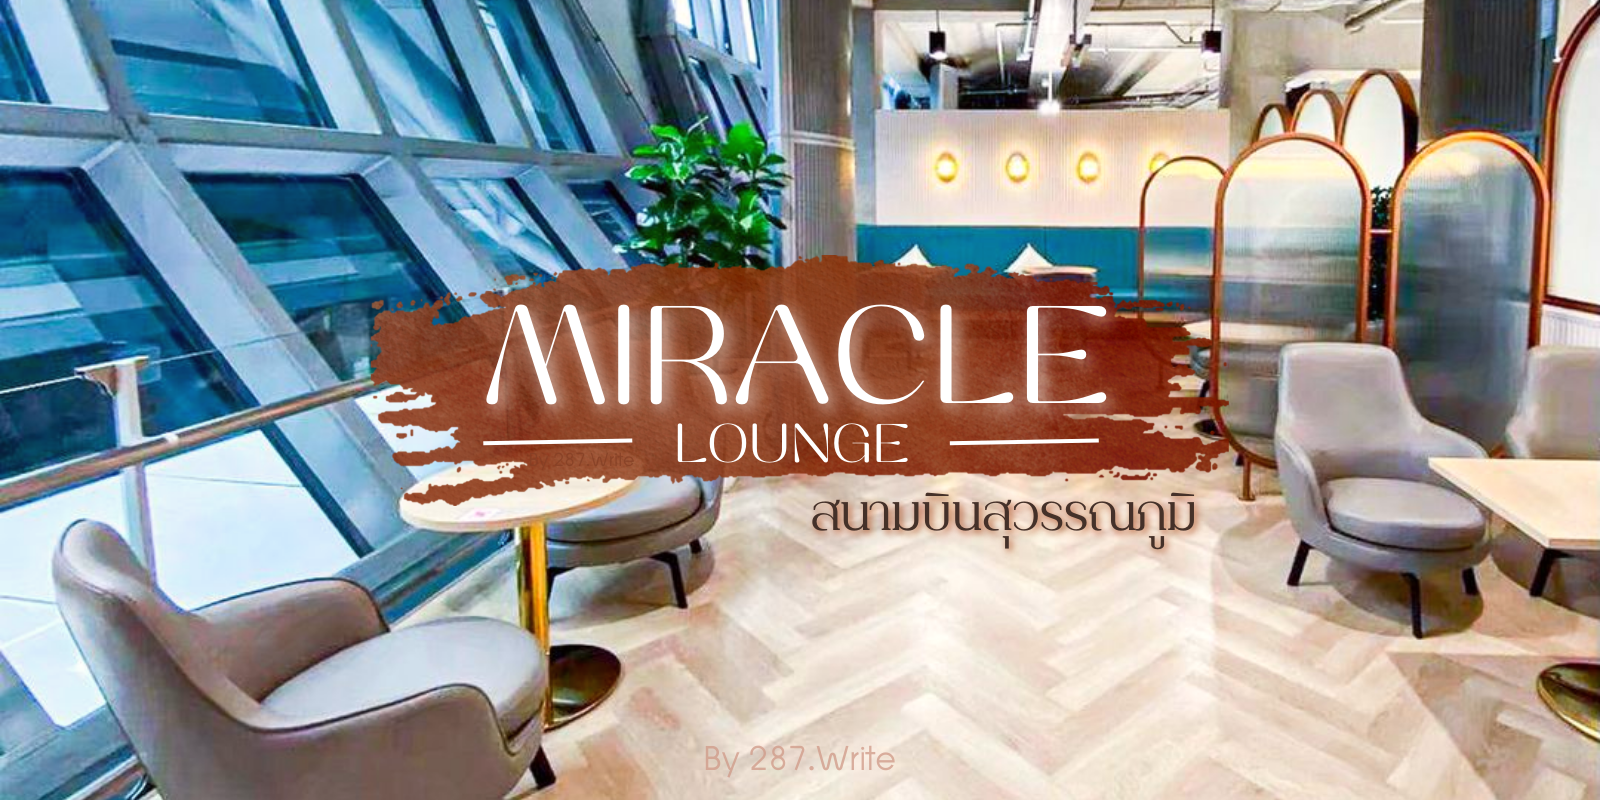 รีวิว เลานจ์ ในสนามบินสุวรรณภูมิ Miracle Lounge เข้าฟรี ! ด้วยบัตรเครดิต